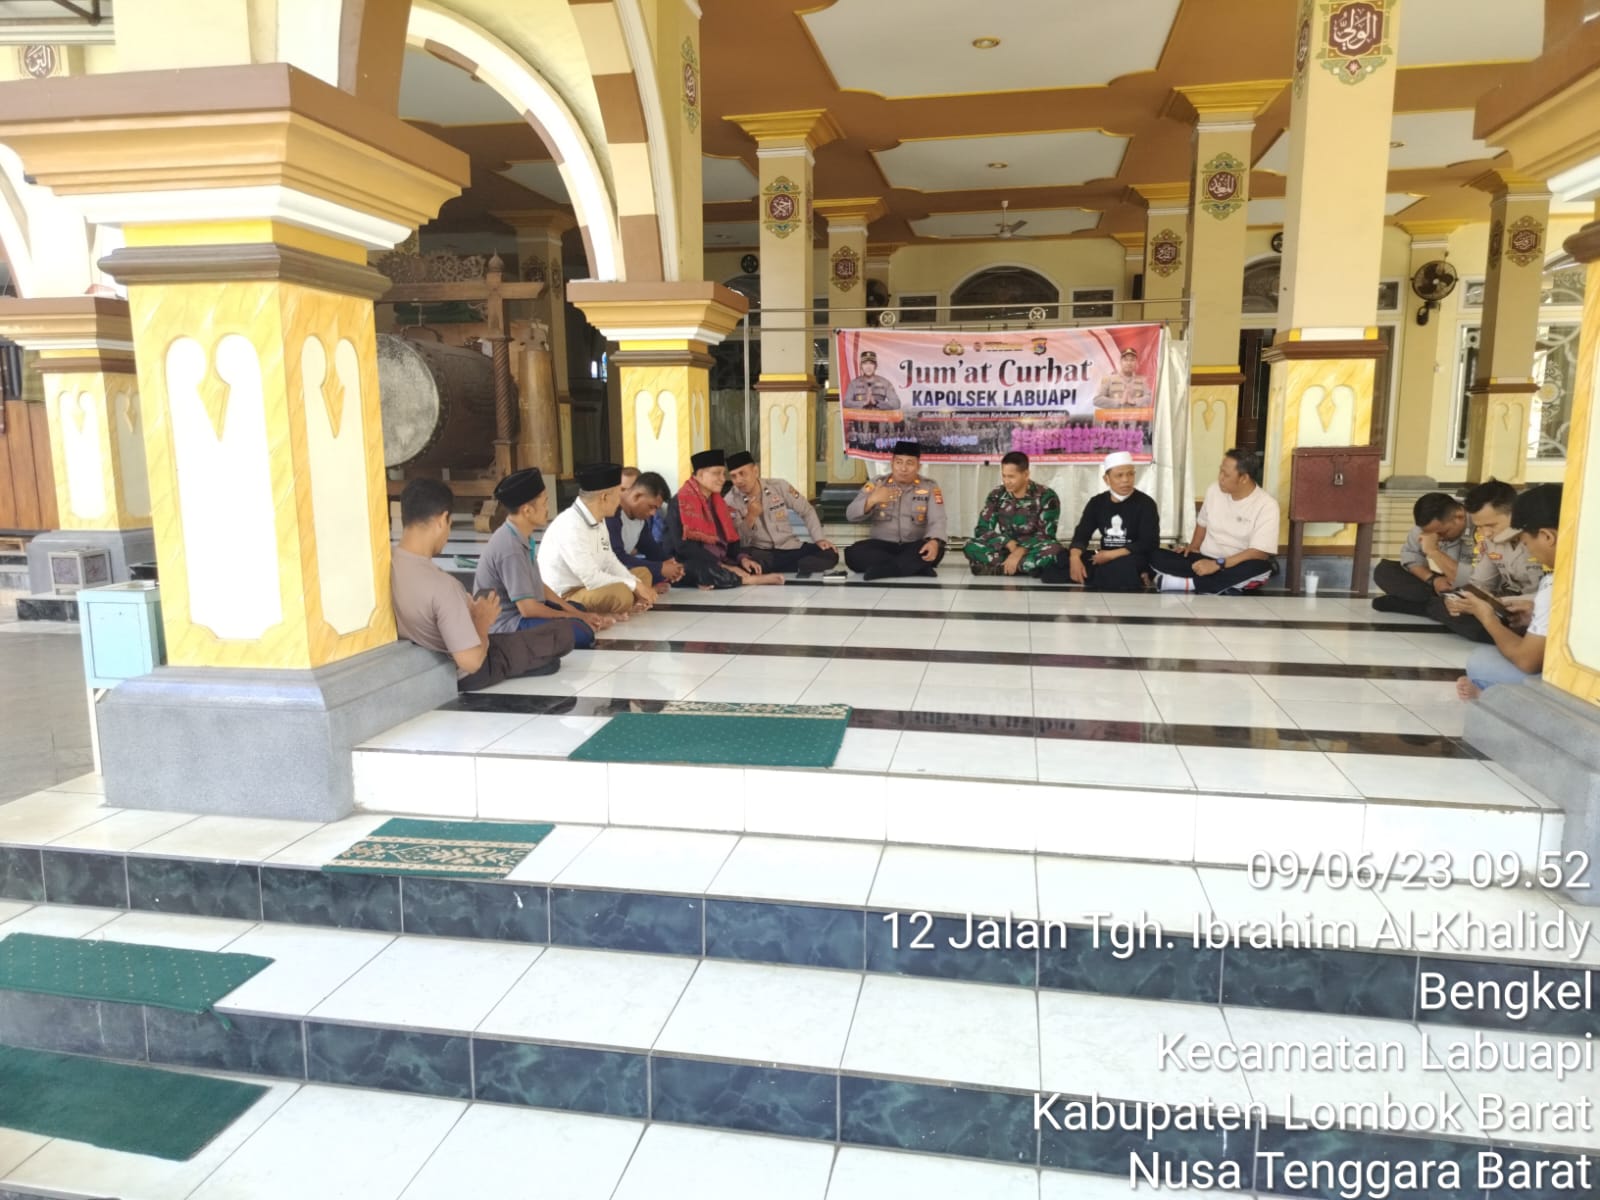 Kapolsek Labuapi Gelar Program Jumat Curhat di Masjid Jamiq Saleh Hambali Desa Bengkel